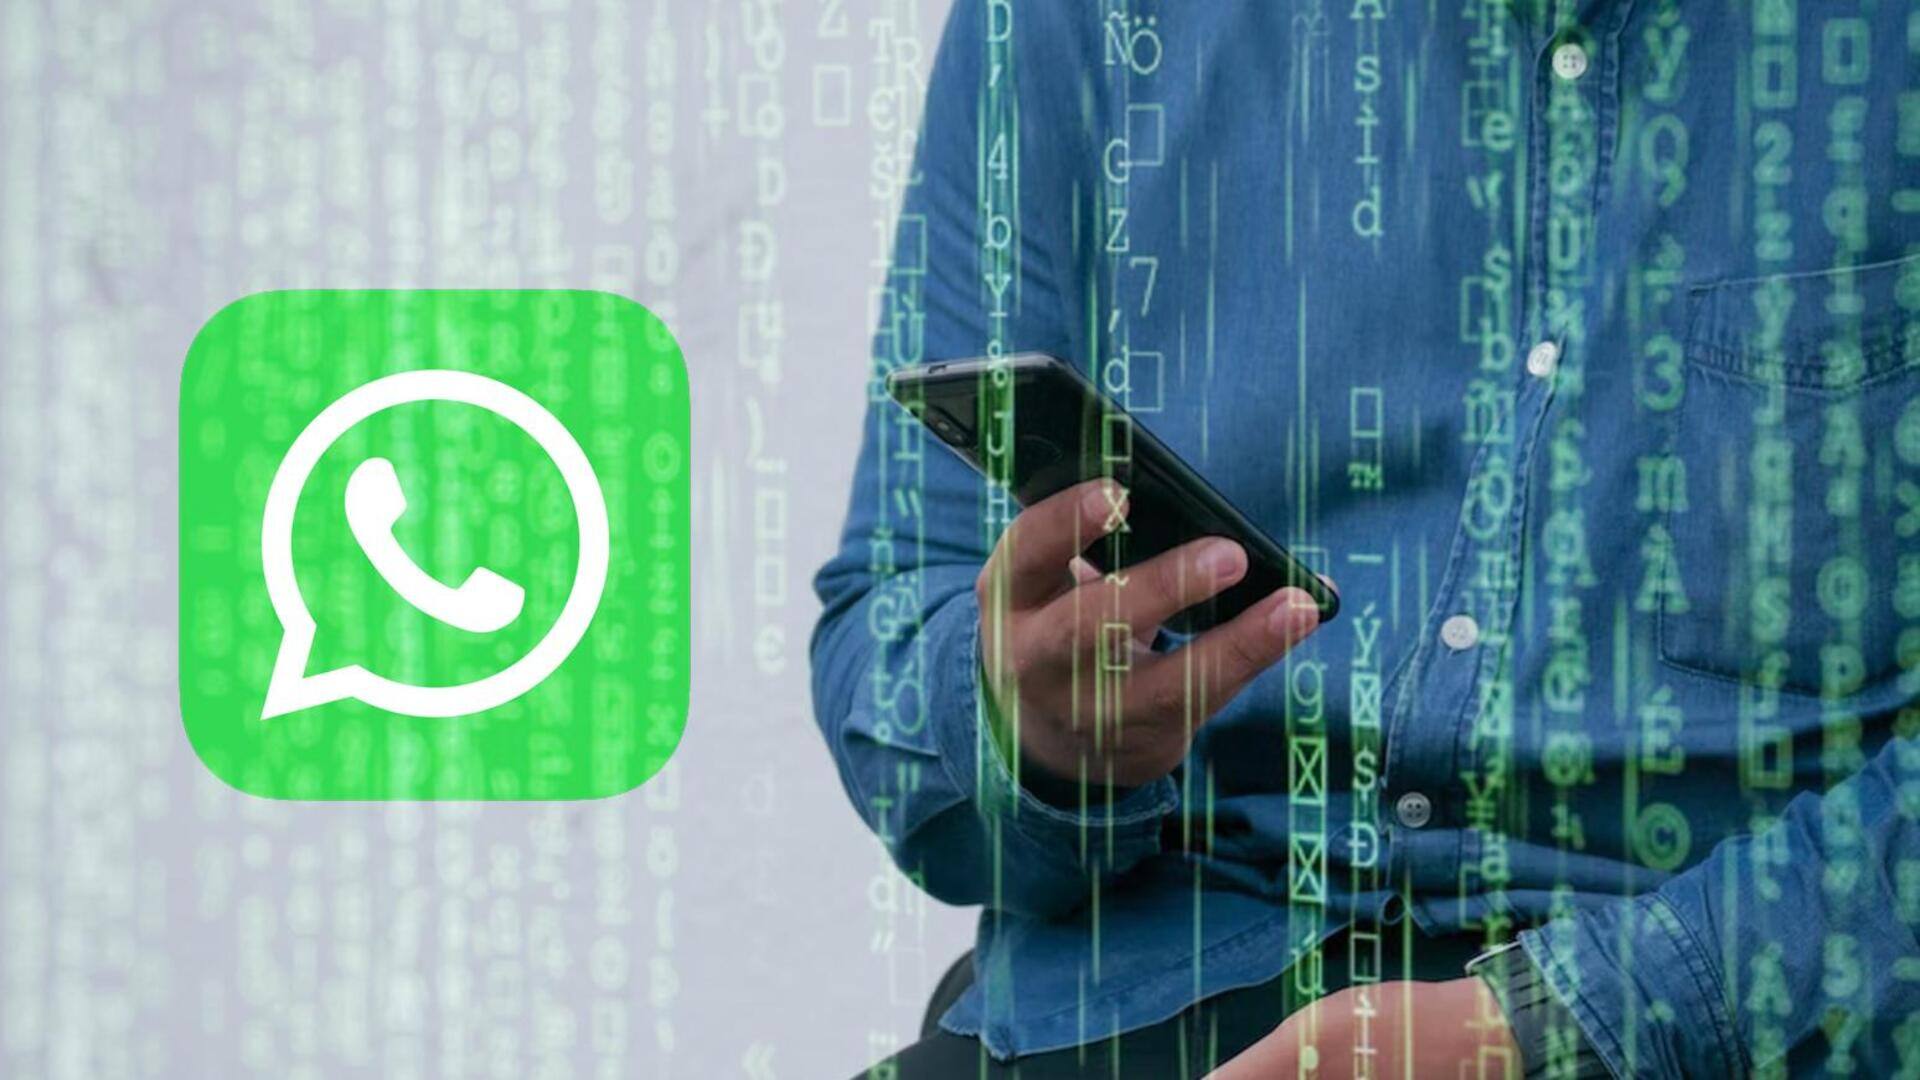 बेंगलुरू: बुजुर्ग ने अटेंड किया व्हाट्सऐप वीडियो कॉल, गंवाने पड़े 35,000 रुपये